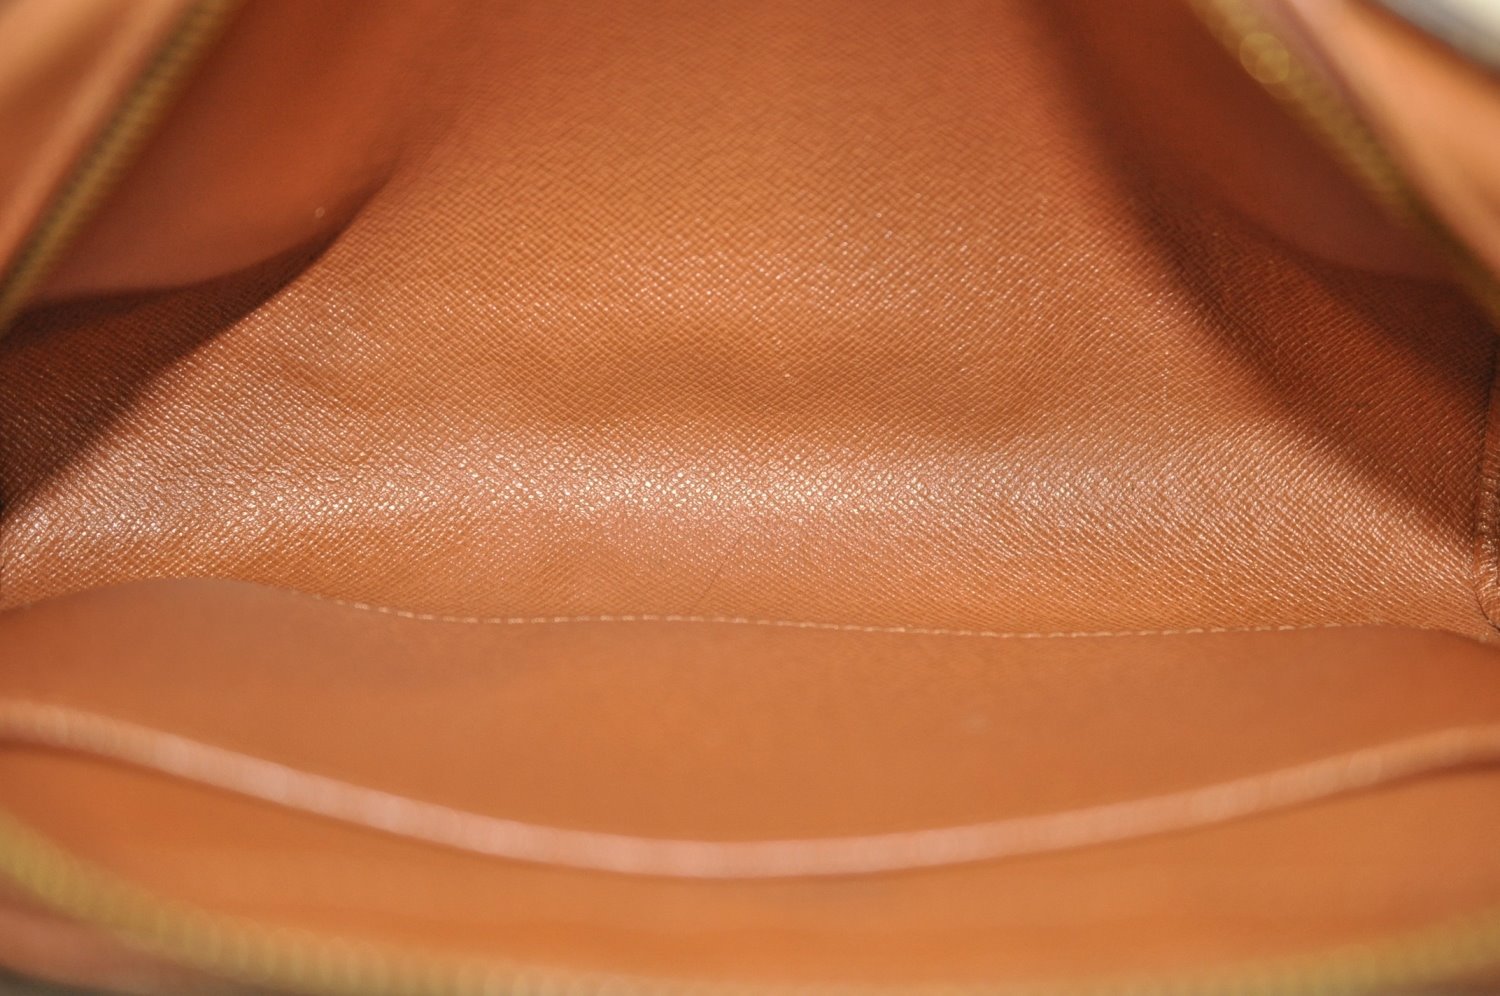 Authentic Louis Vuitton Monogram Orsay Clutch Hand Bag Purse M51790 LV K9823